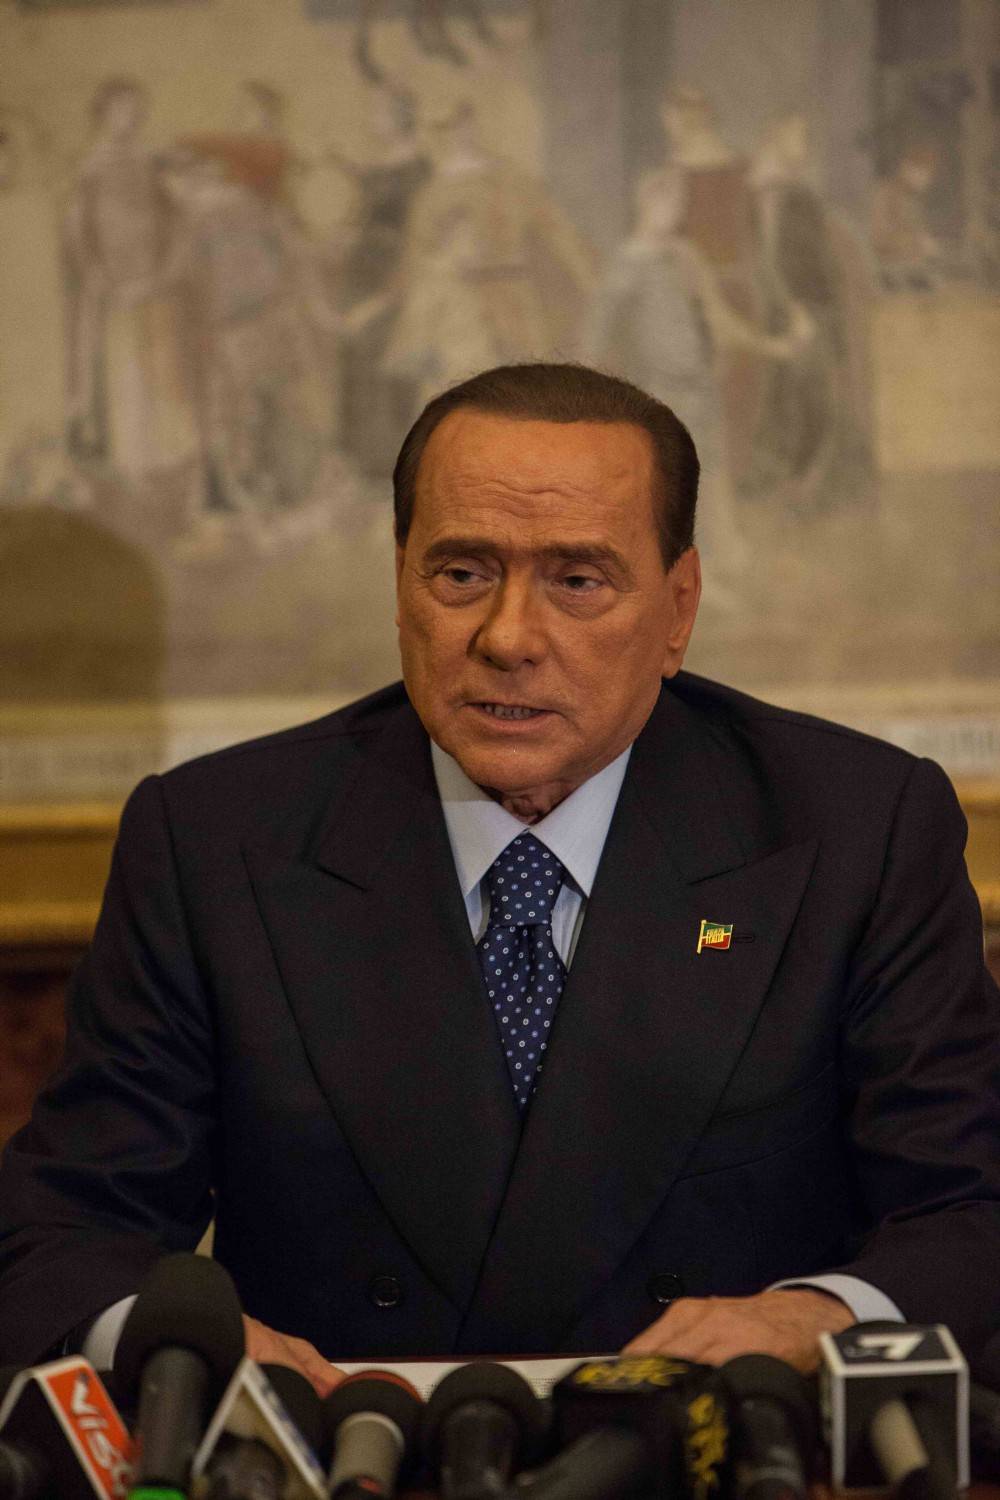 Scatta la gara degli ex nemici a fare il filo a Berlusconi